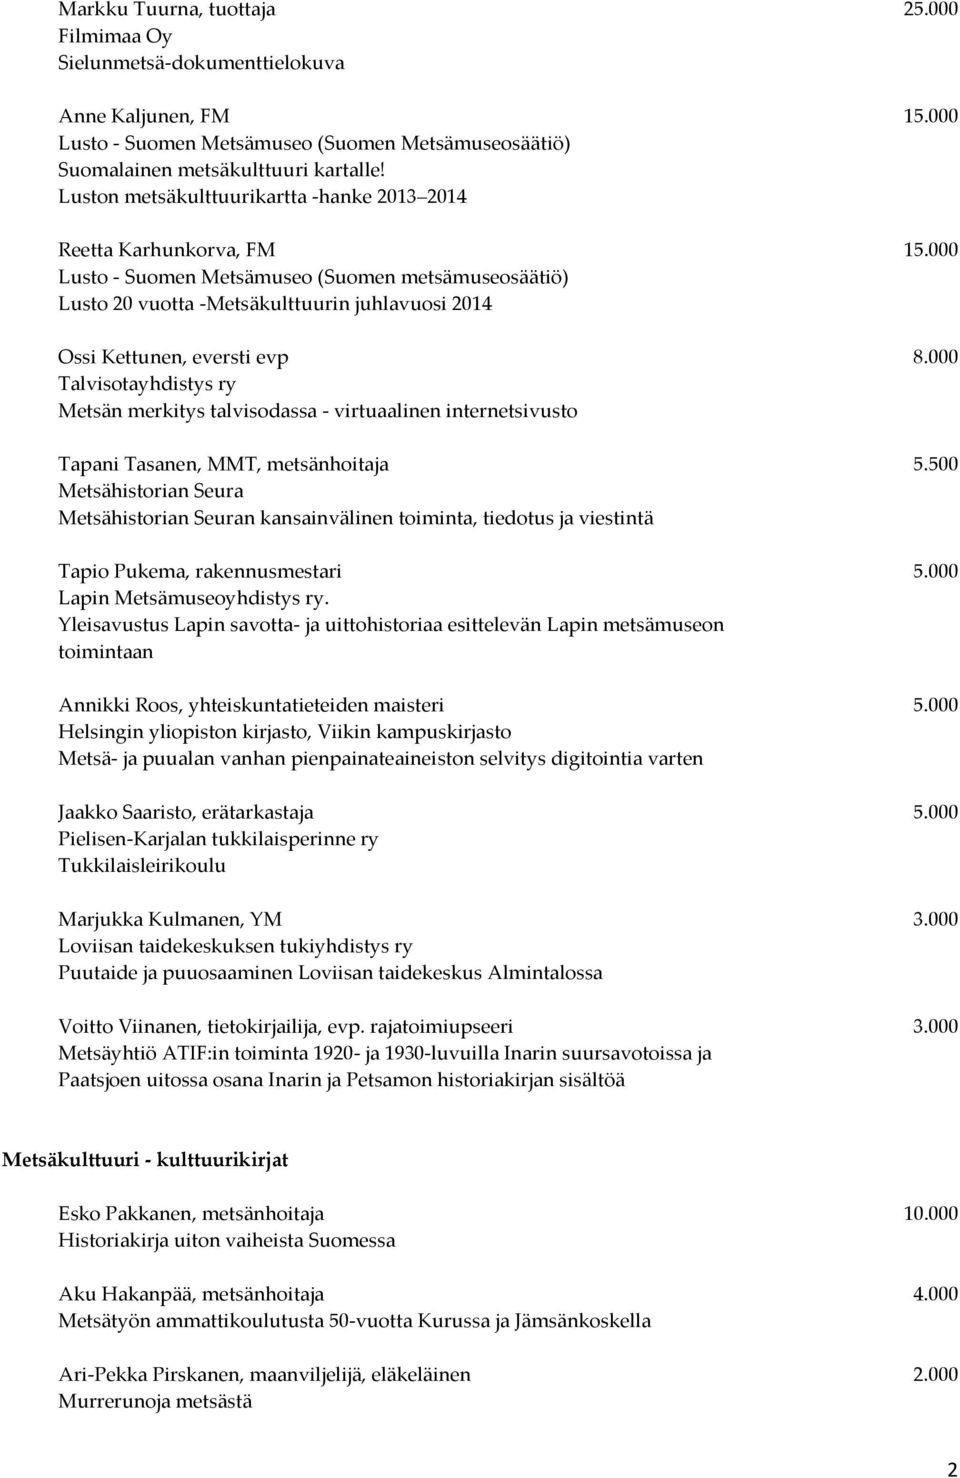 000 Lusto - Suomen Metsämuseo (Suomen metsämuseosäätiö) Lusto 20 vuotta -Metsäkulttuurin juhlavuosi 2014 Ossi Kettunen, eversti evp 8.